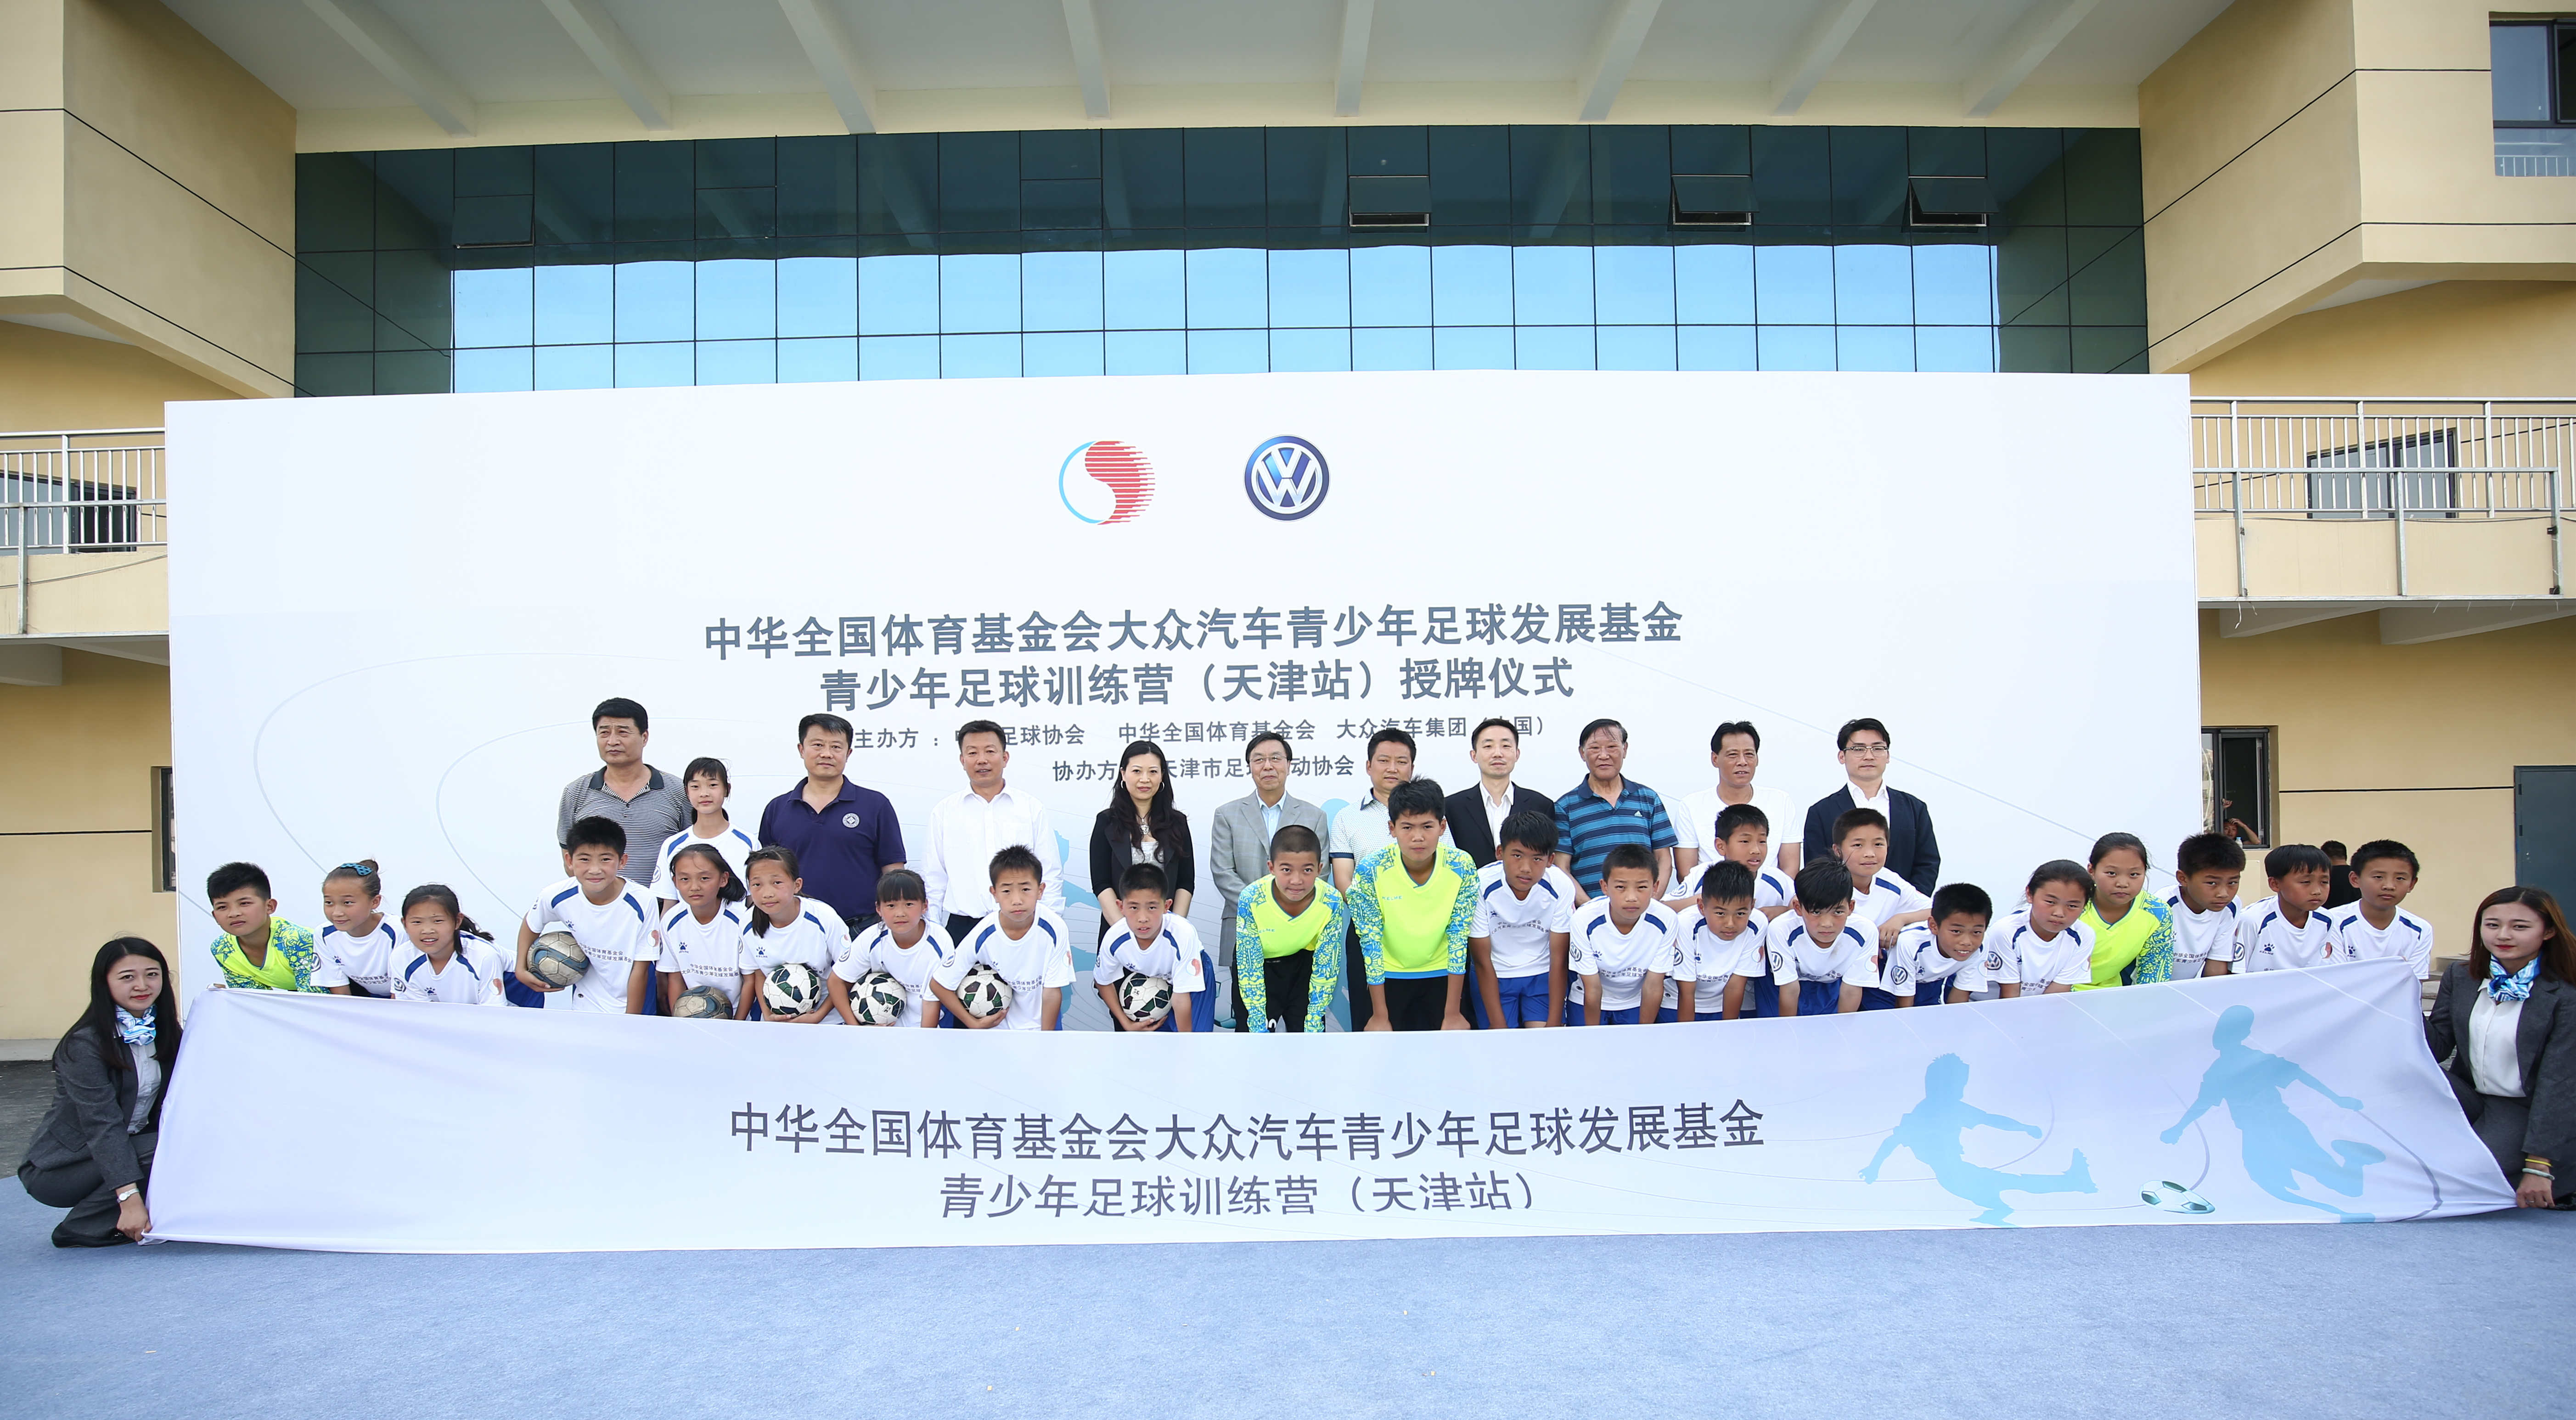 大众汽车青少年足球训练营在天津启动